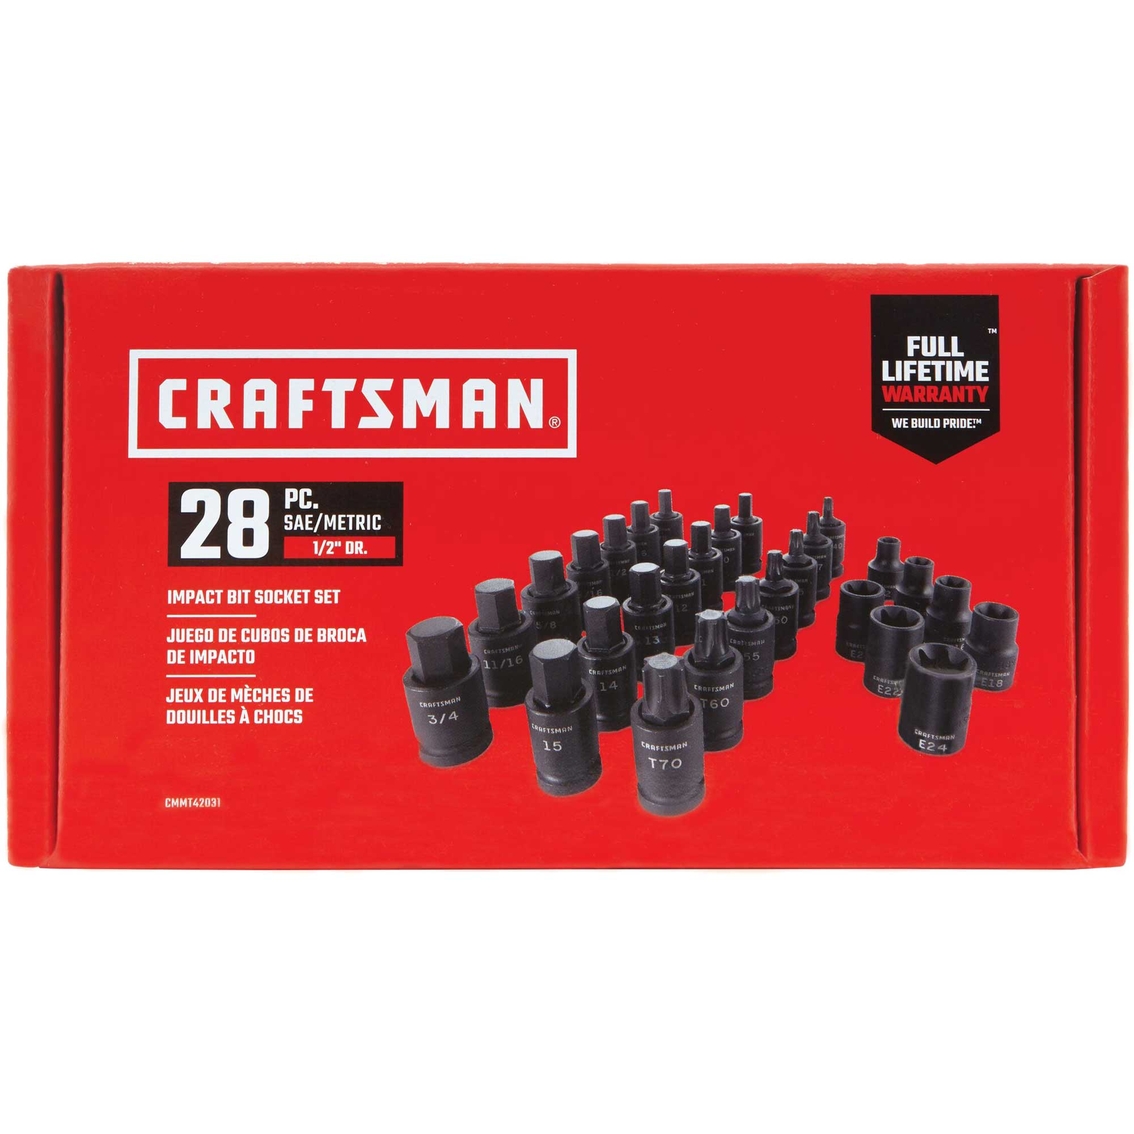 Craftsman SAE 1/2 in. Drive Impact Bit 28 pc. Socket Set - Image 2 of 2